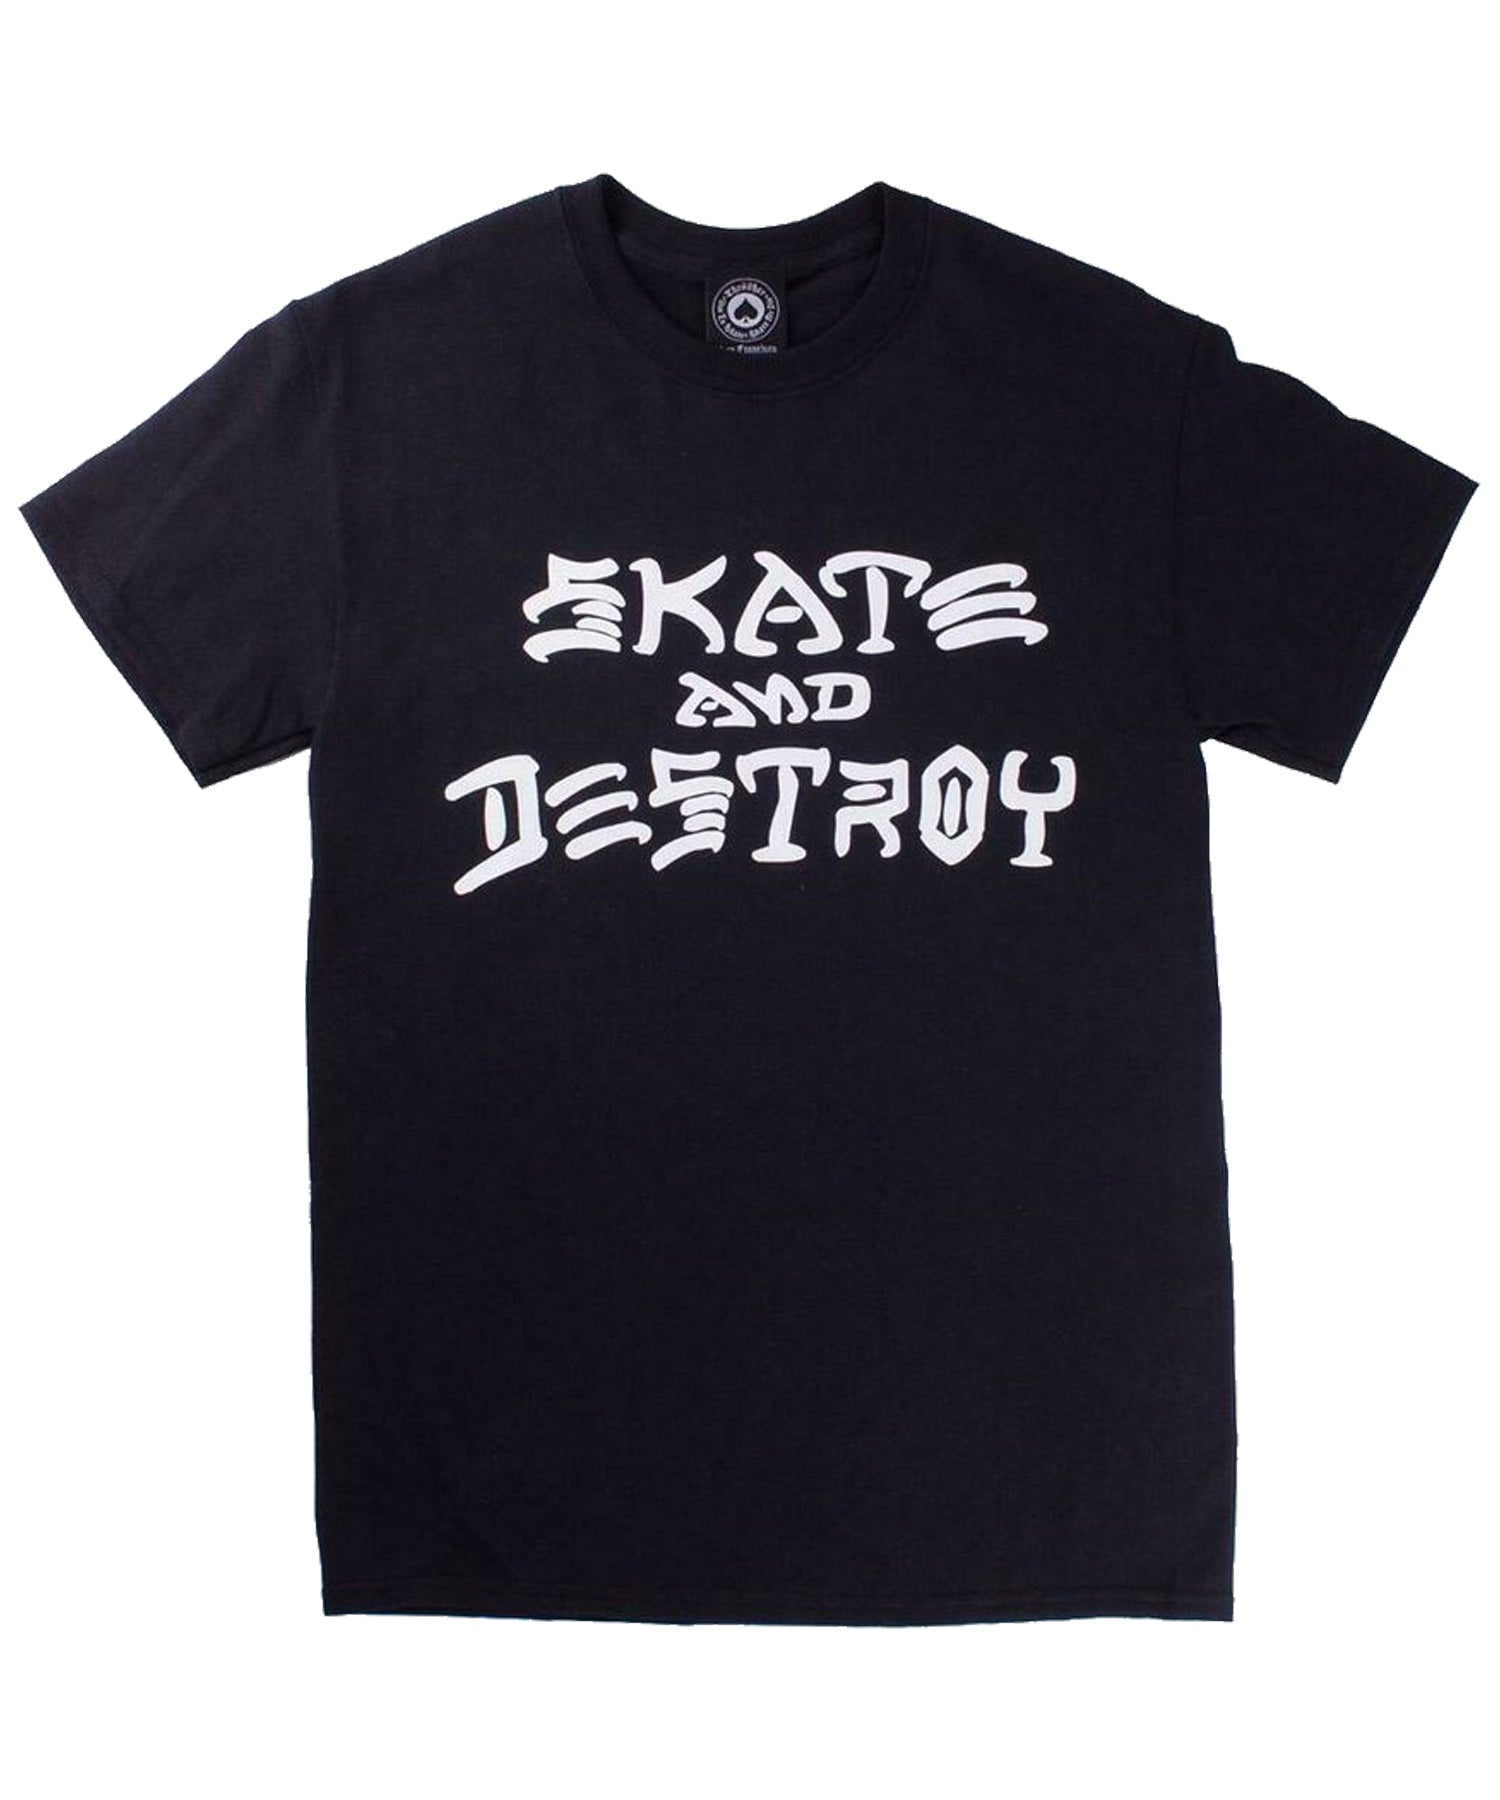 thrasher-camiseta-skate and destroy-La camiseta Thrasher Skate and Destroy-un clásico en el mundo del skate-materiales de buena calidad.